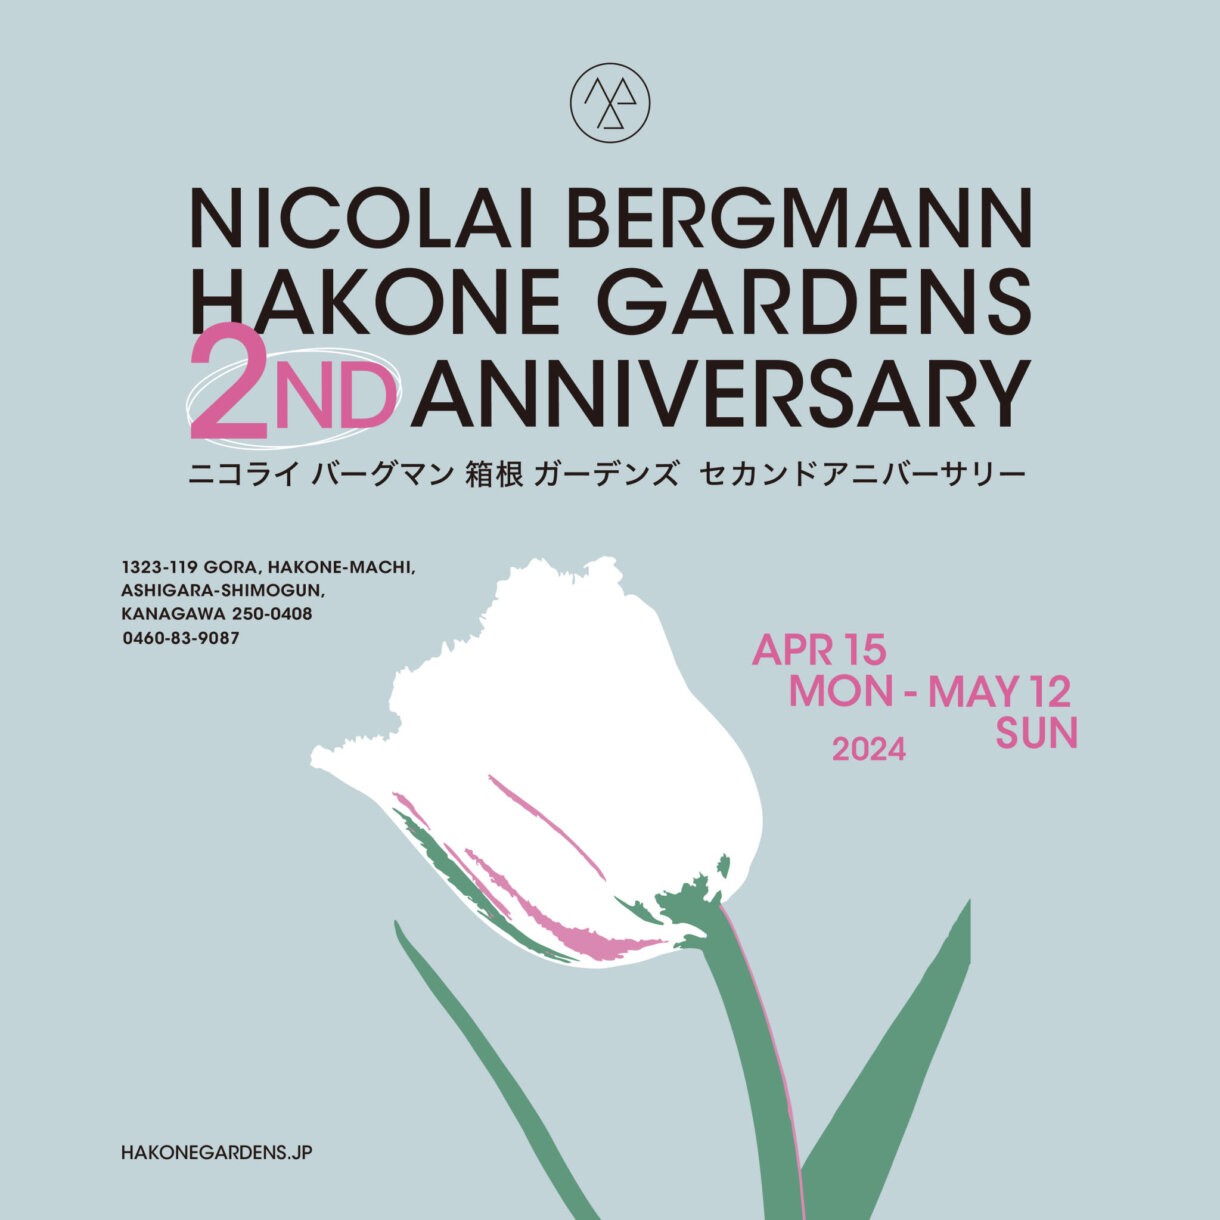 EVENT: Nicolai Bergmann Hakone Gardens 2nd Anniversary